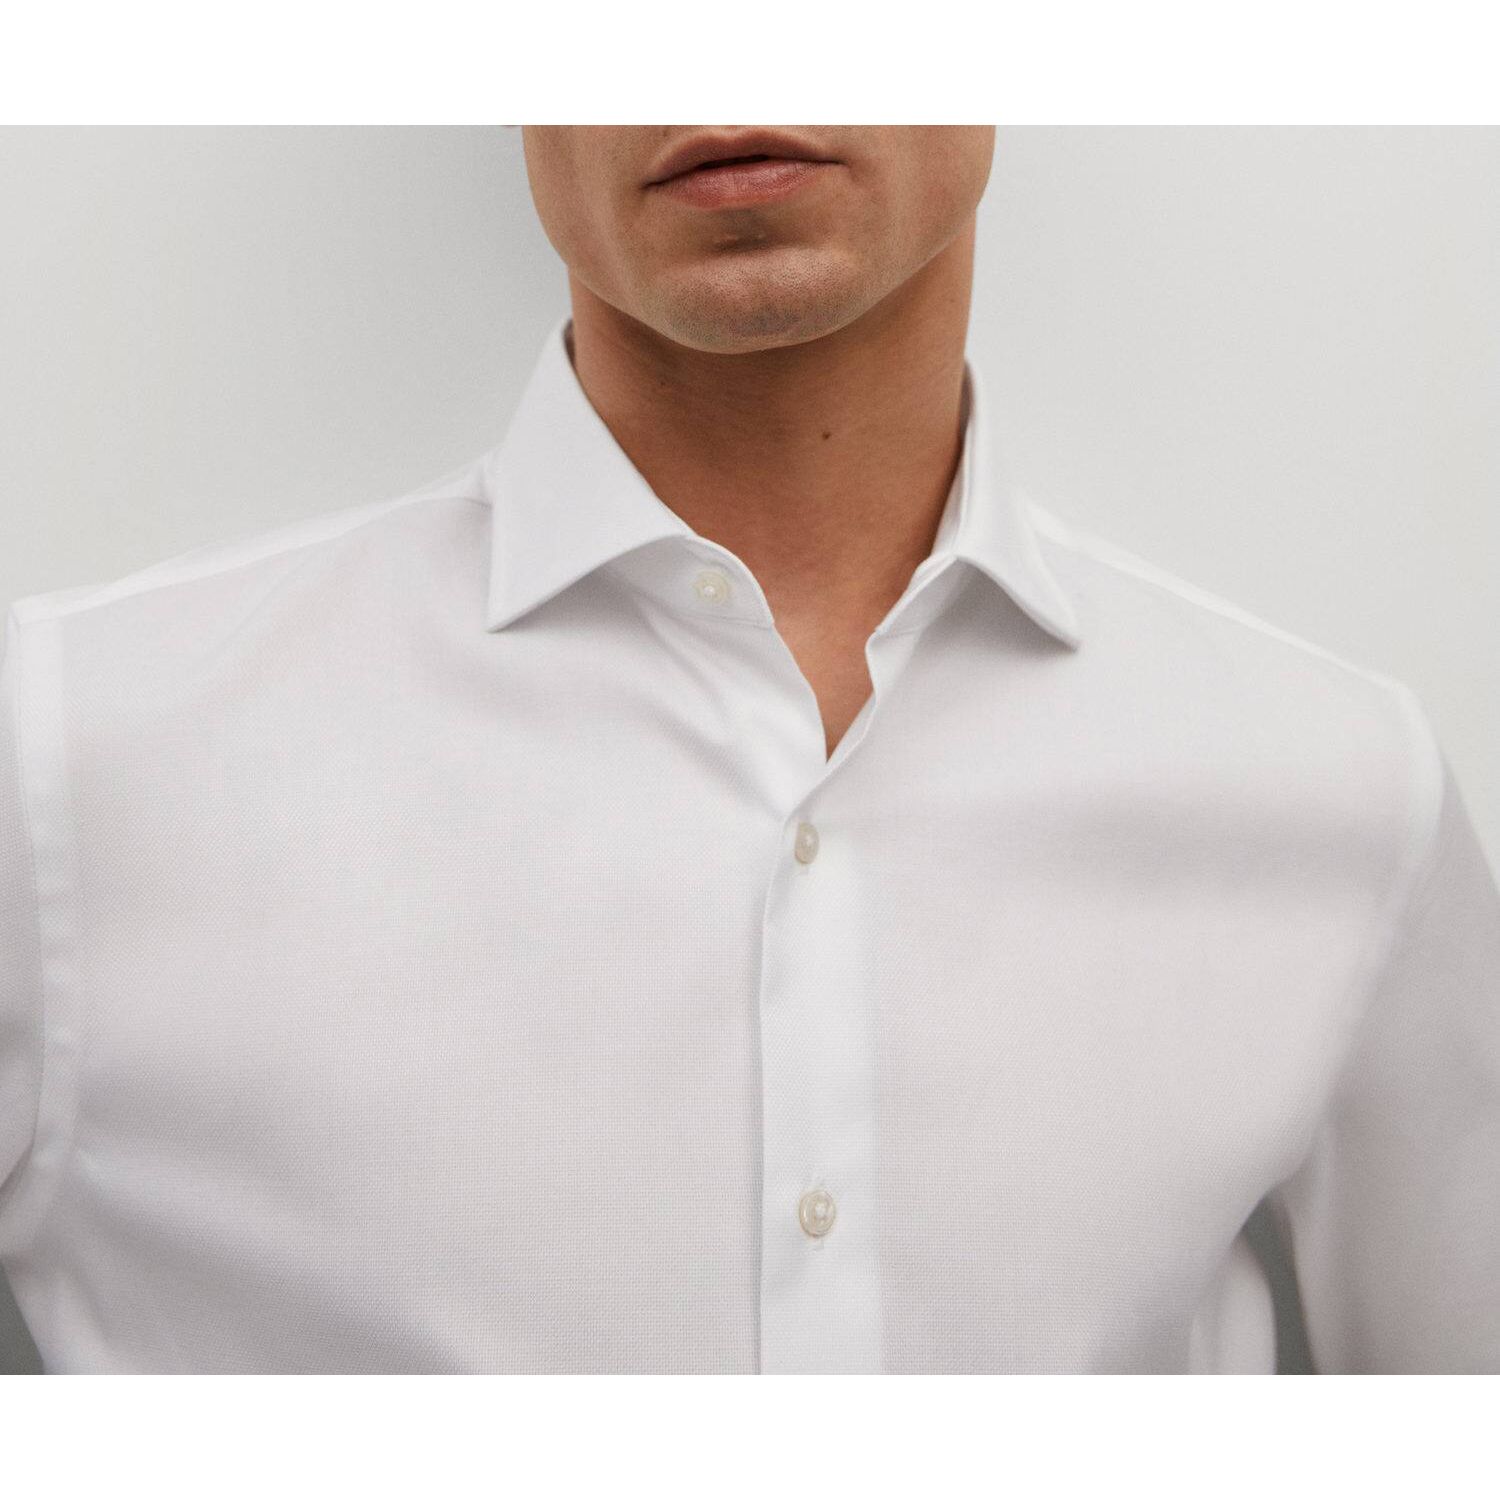 پیراهن آستین بلند مردانه مانگو مدل WT613MAR -  - 5